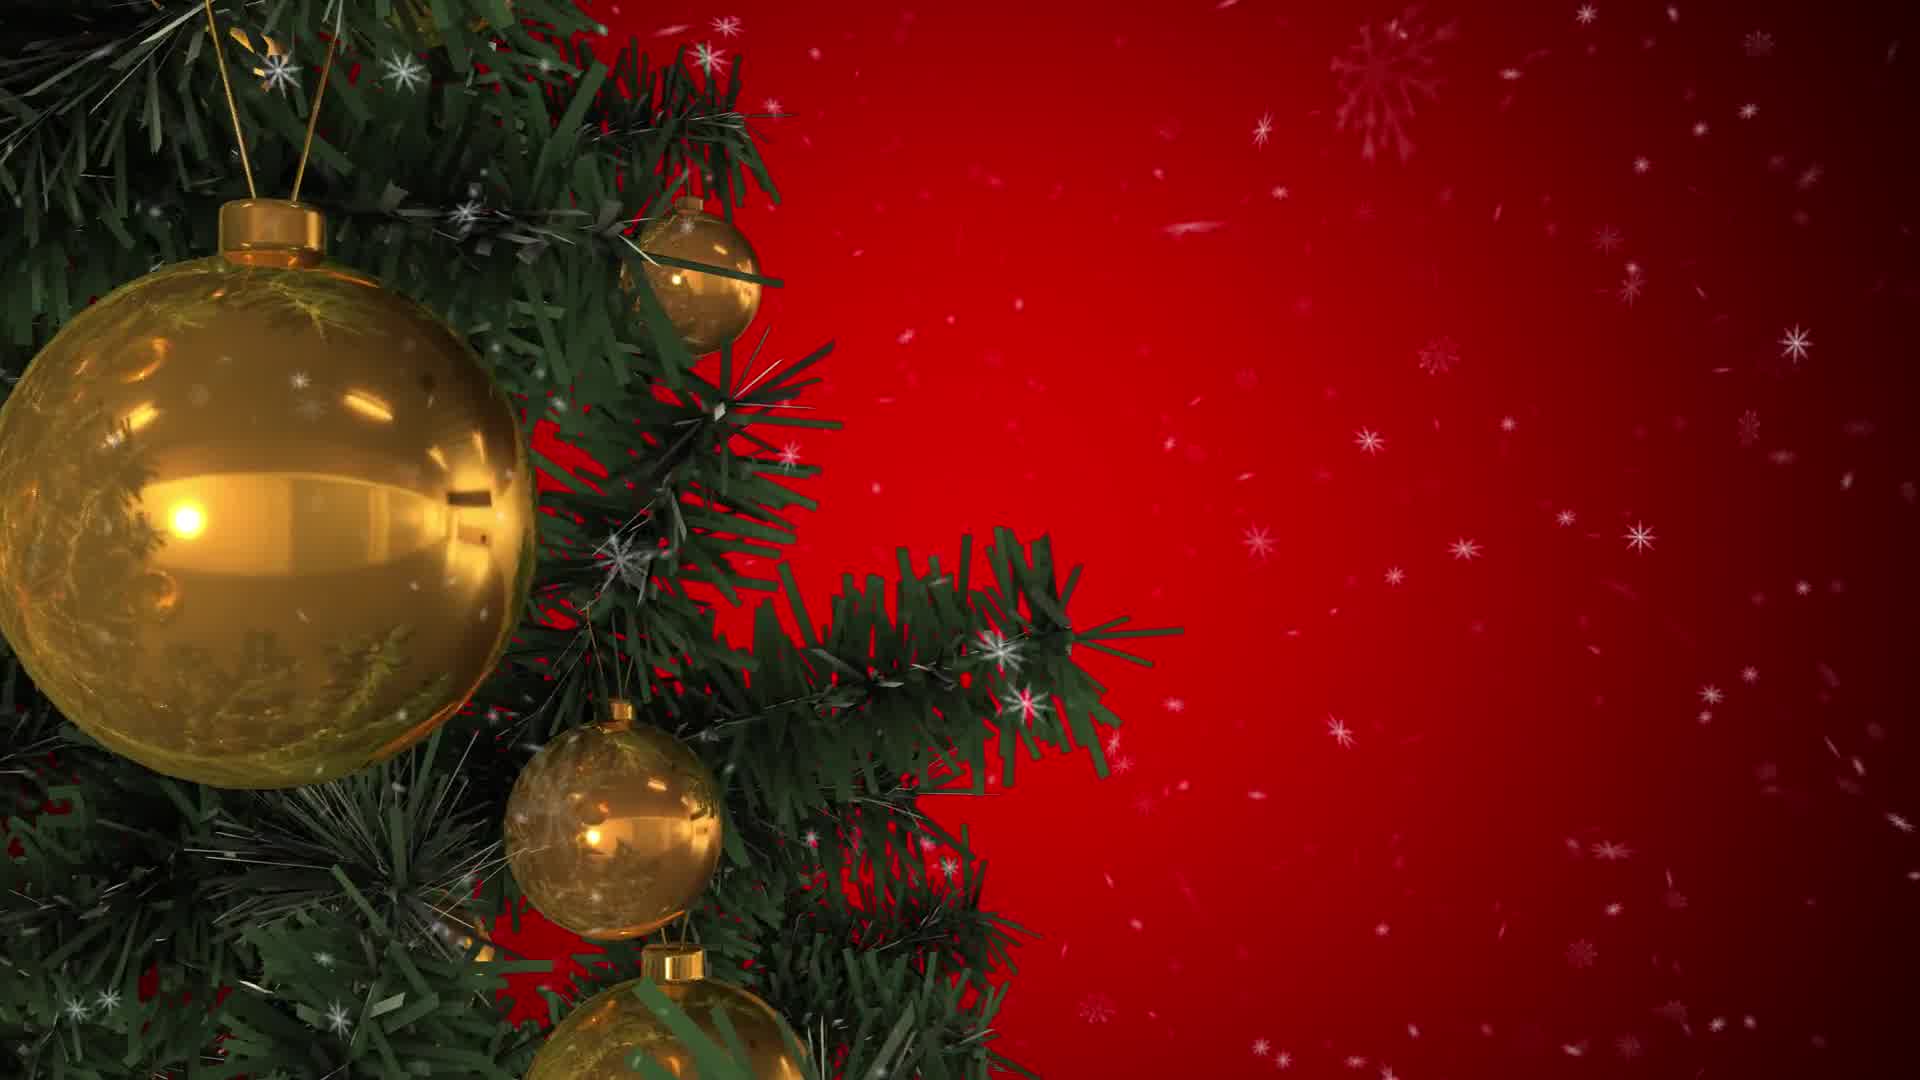 Rotating Christmas Tree Videohive 22935986 Motion Graphics Image 9